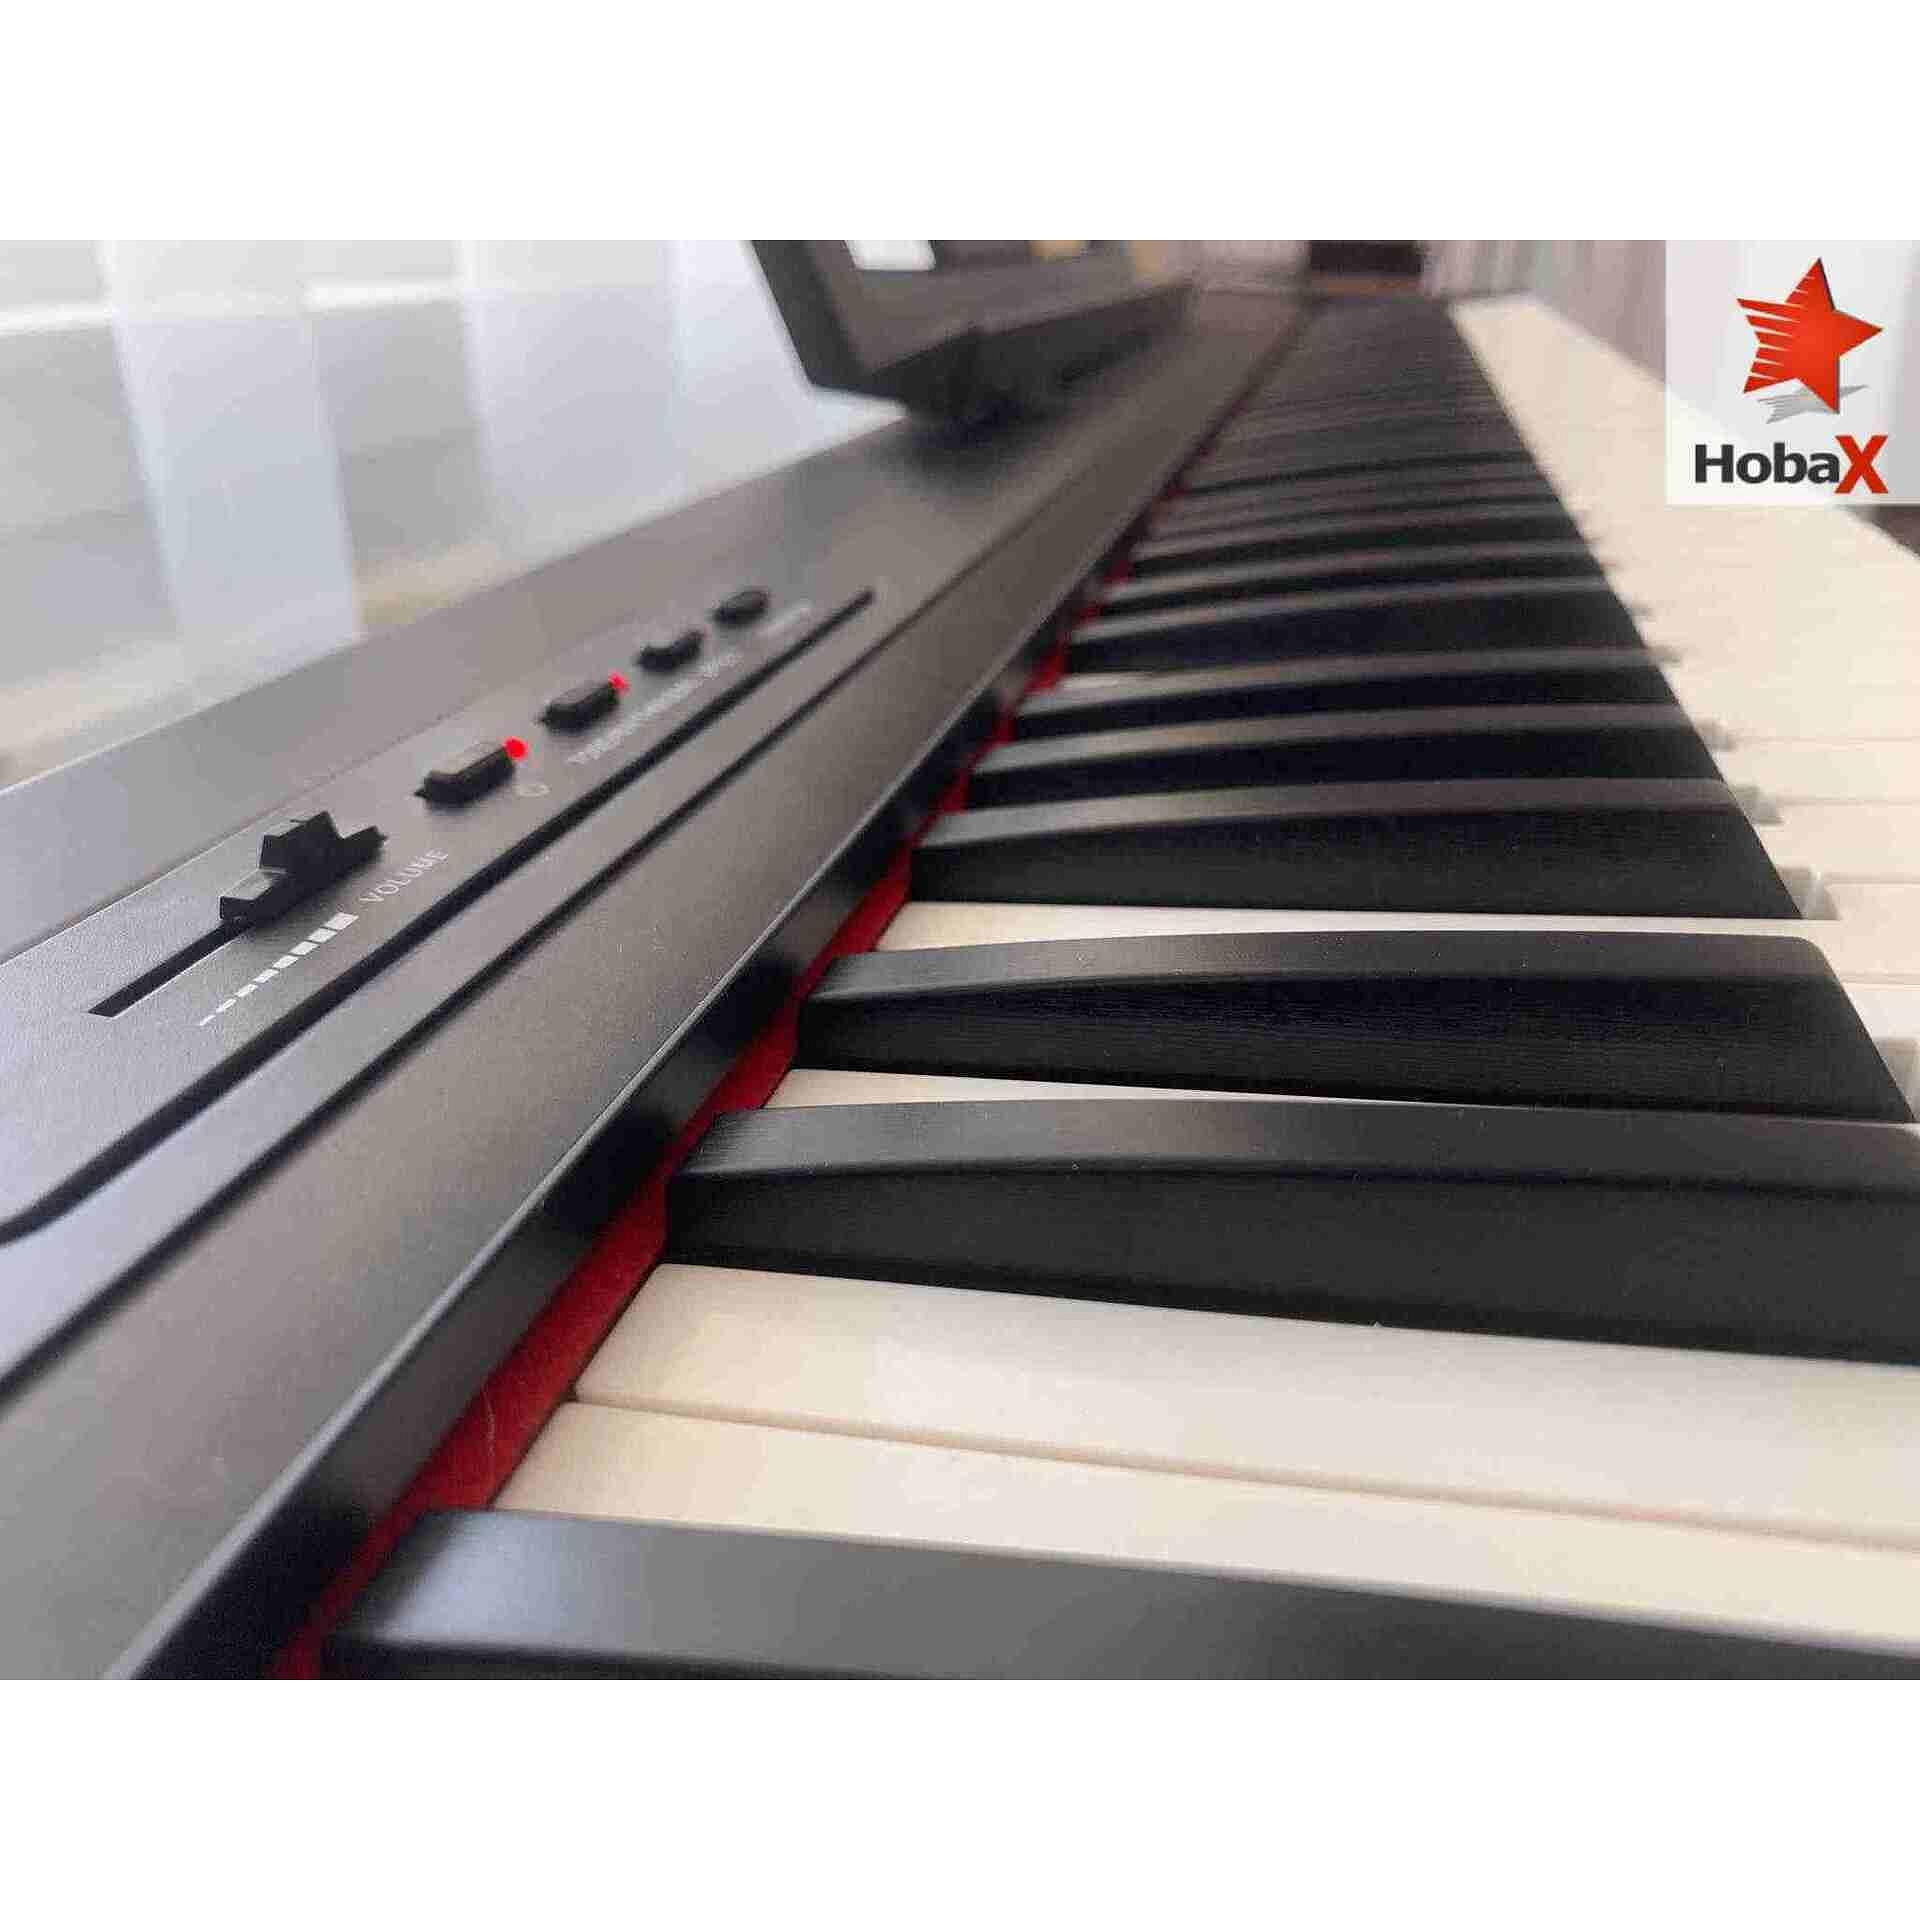 Комплект дигитално пиано Hobax S-196, 88 клавиша, 7 октави, 8 звуци, 128 ритми, вградена стойка за ноти, sustain педал + 3 ПОДАРЪКА - стикери за пиано, слушалки и х стойка